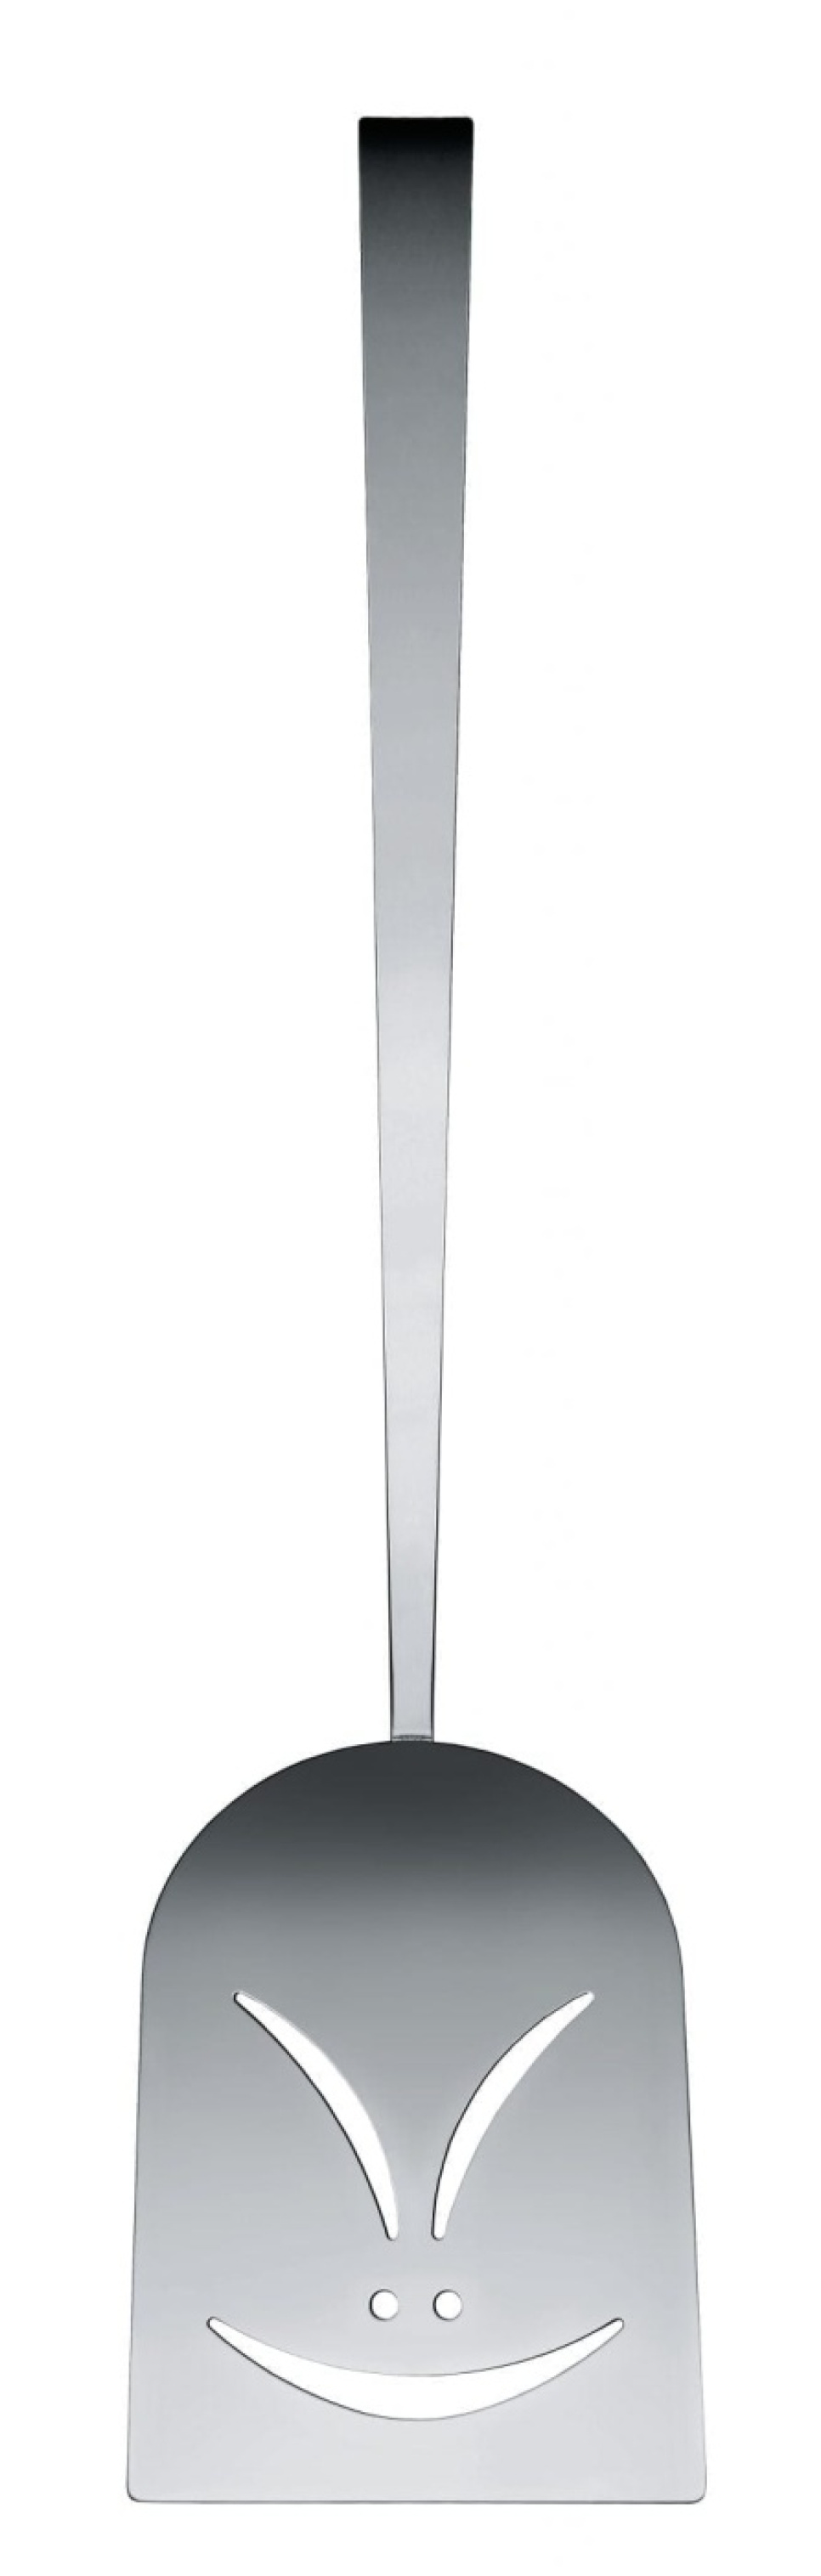 Łopatka 39 cm, Peltoo - Alessi w grupie Gotowanie / Przybory kuchenne / Łopatki i skrobaki w The Kitchen Lab (1466-16610)